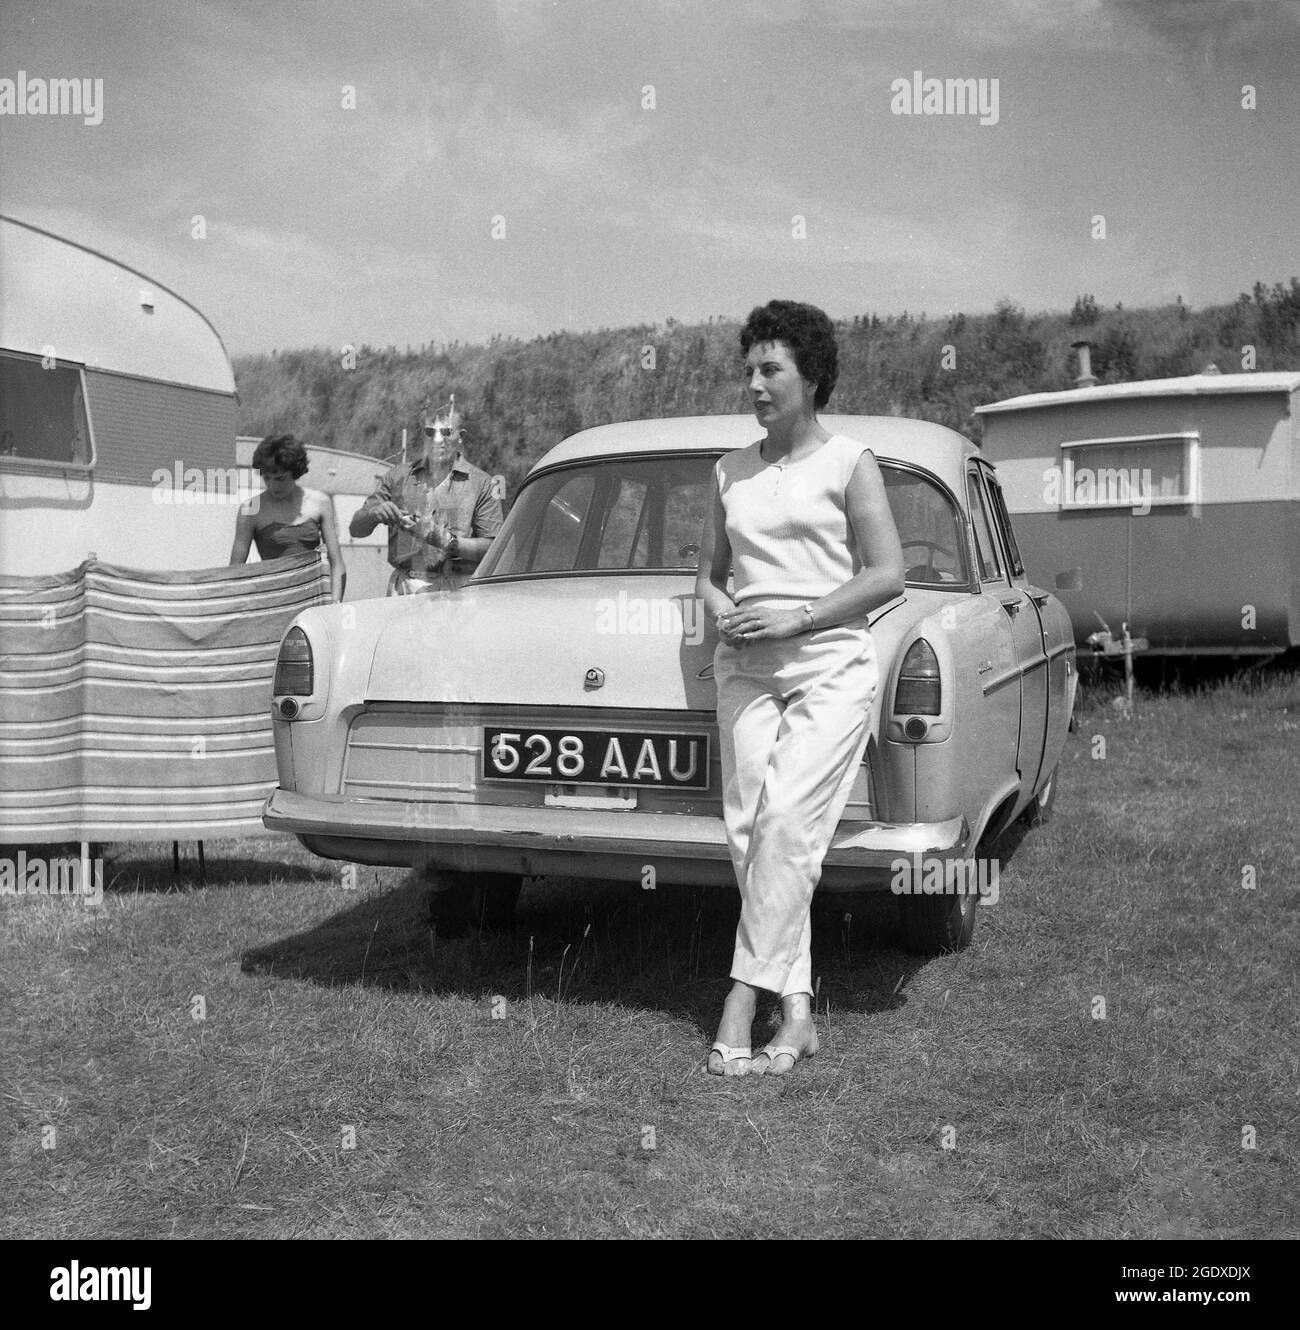 Années 1960, historique, à l'extérieur d'un champ sur un site de caravane, une élégante dame penchée sur le coffre d'une voiture de l'époque, garée à côté d'un brise-vent, installé à côté d'une caravane, Angleterre, Royaume-Uni. Banque D'Images